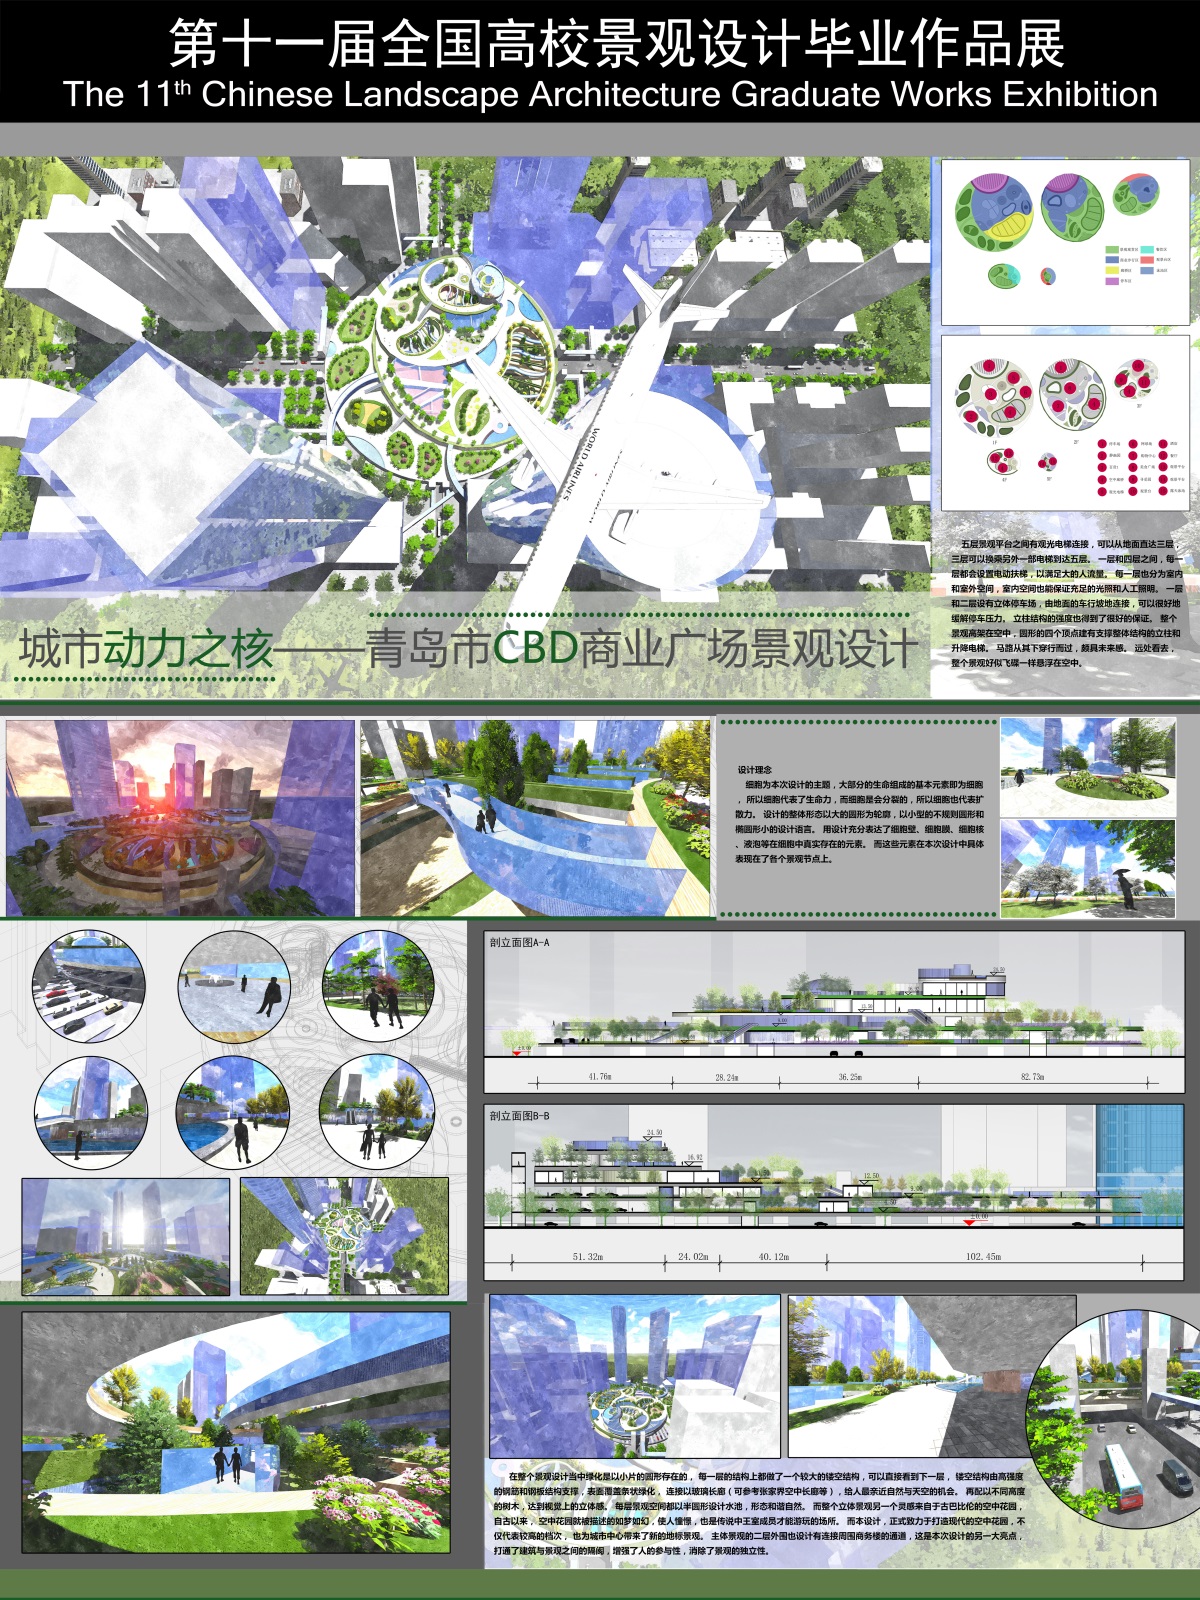 城市动力之核——青岛市CBD商业广场景观设计-1